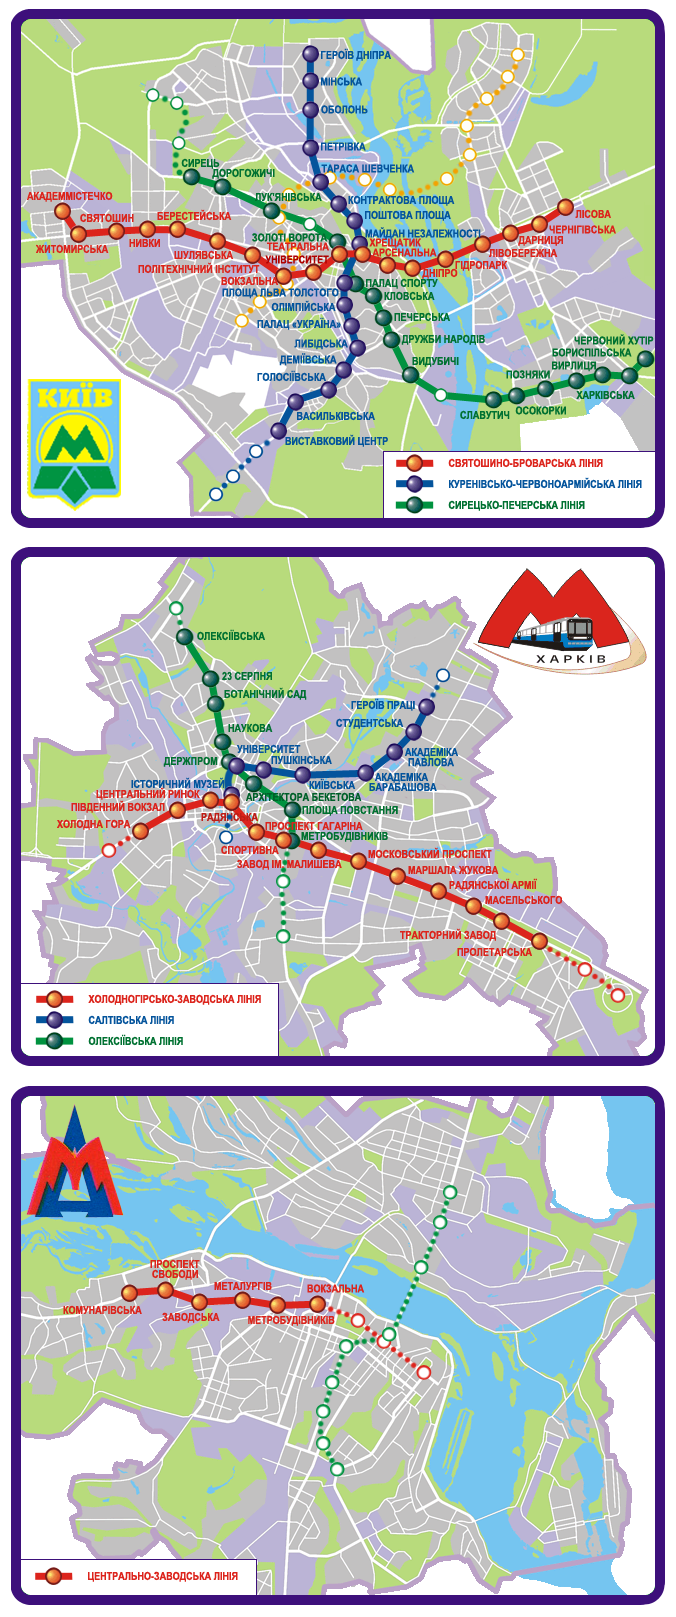 Dnyepro — Maps; Harkov — Metro — Maps; Kijev — Metro — Maps